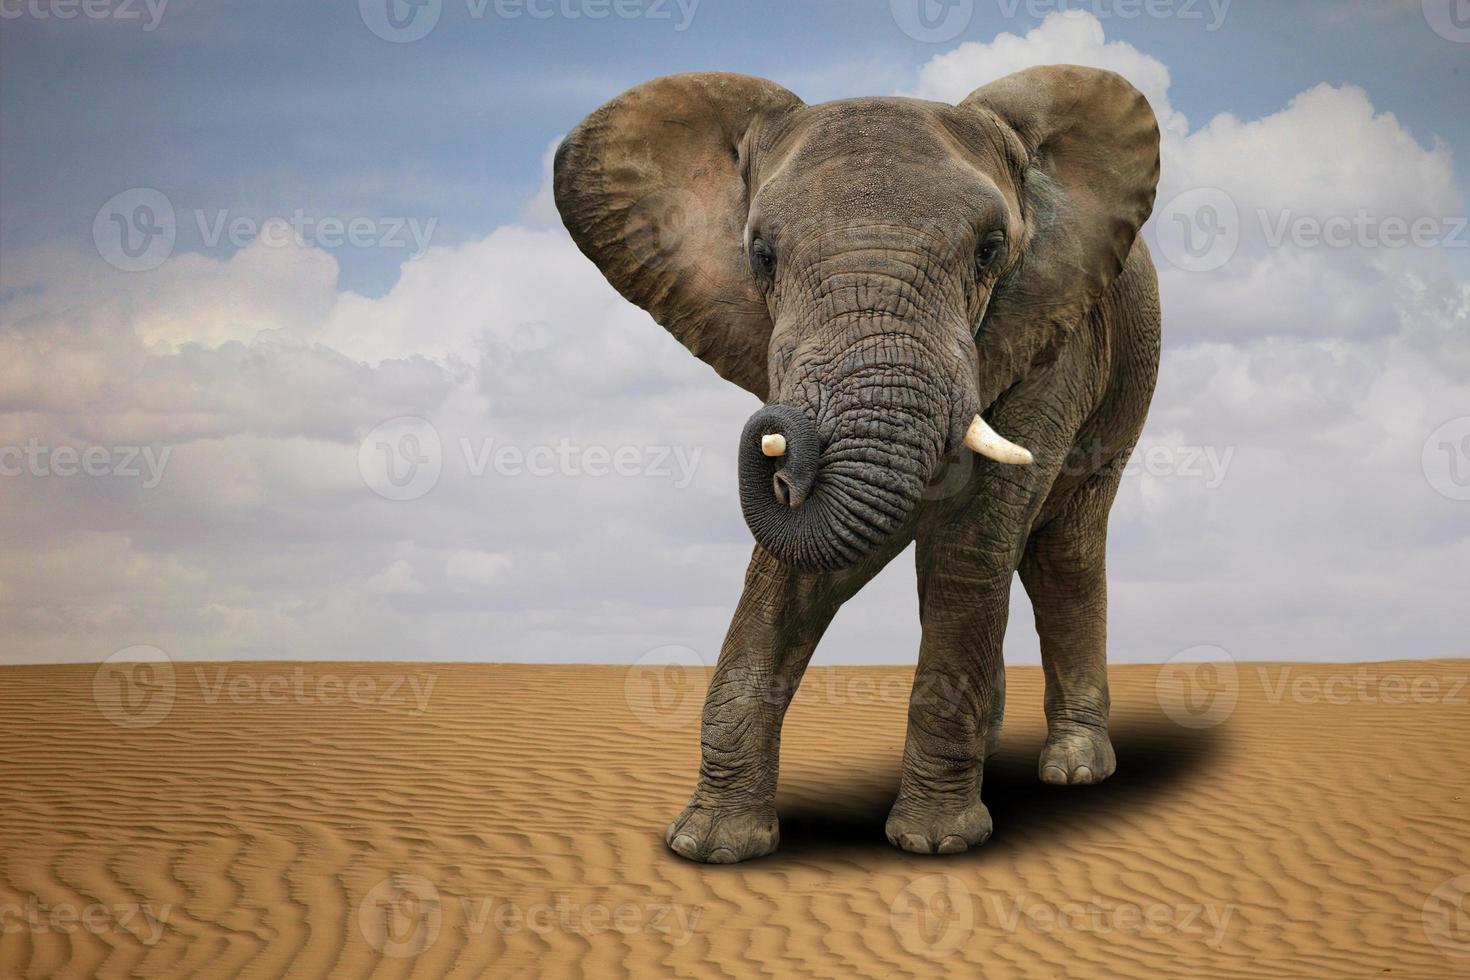 elefante africano solitario al aire libre a la luz del día foto